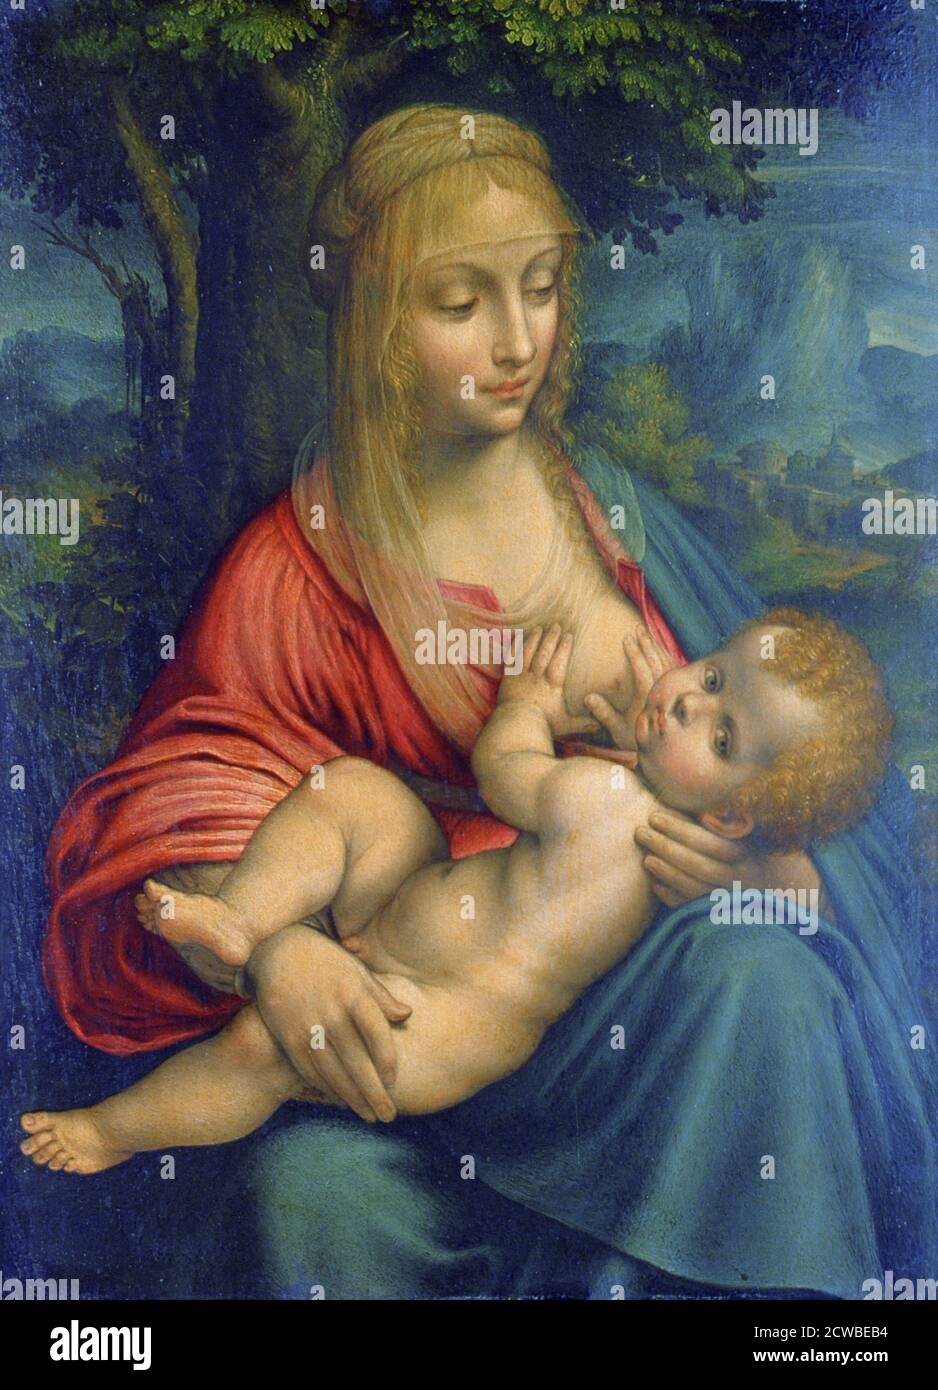 La Vierge et l'enfant', c1511 artiste: Leonardo da Vinci. Le design est basé sur deux tableaux de Léonard de Vinci, la 'Litta Madonna' et la 'Madonna du fil-Winder' Banque D'Images